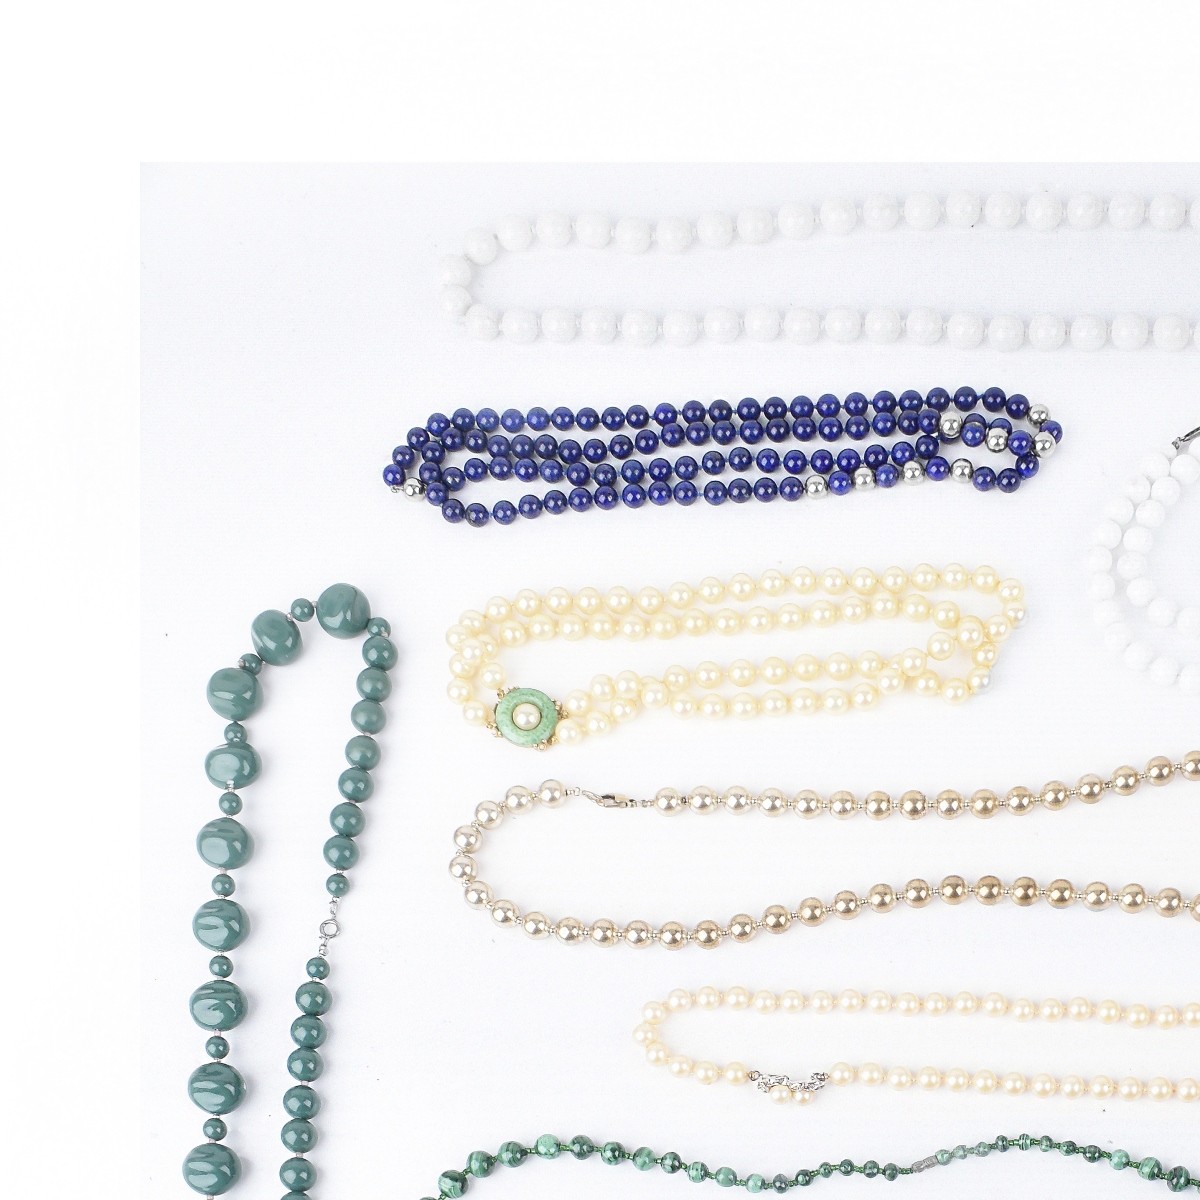 Eleven Costume Jewelry Bead Necklaces